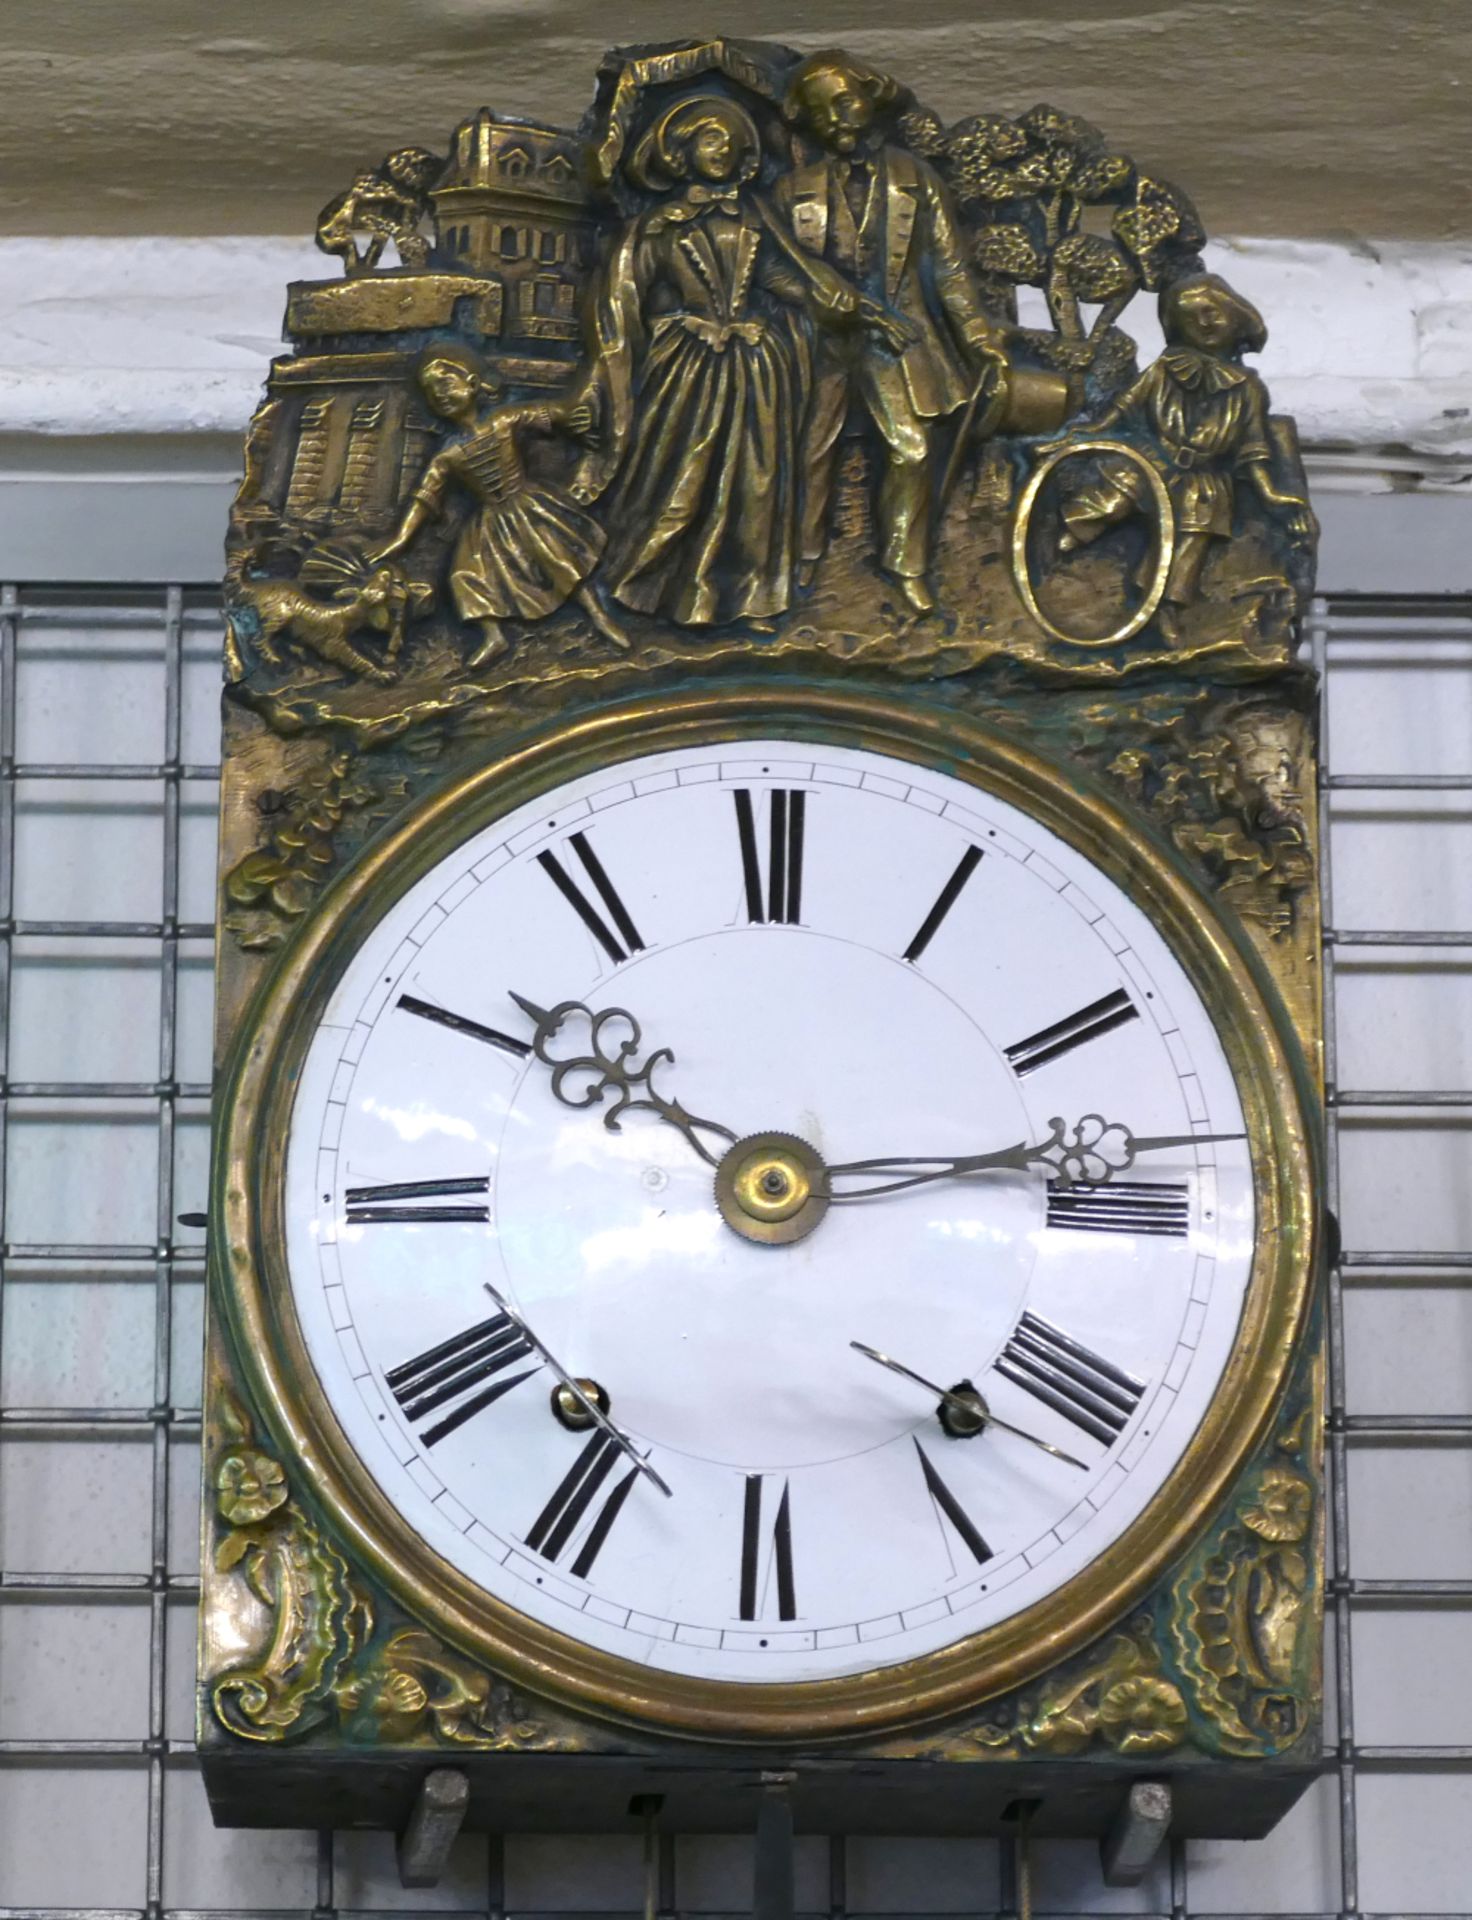 1 Comtoise-Uhr mit emailliertem Metallziffernblatt, Gehäuse mit Messingschild "Spazierende Familie" - Image 2 of 2